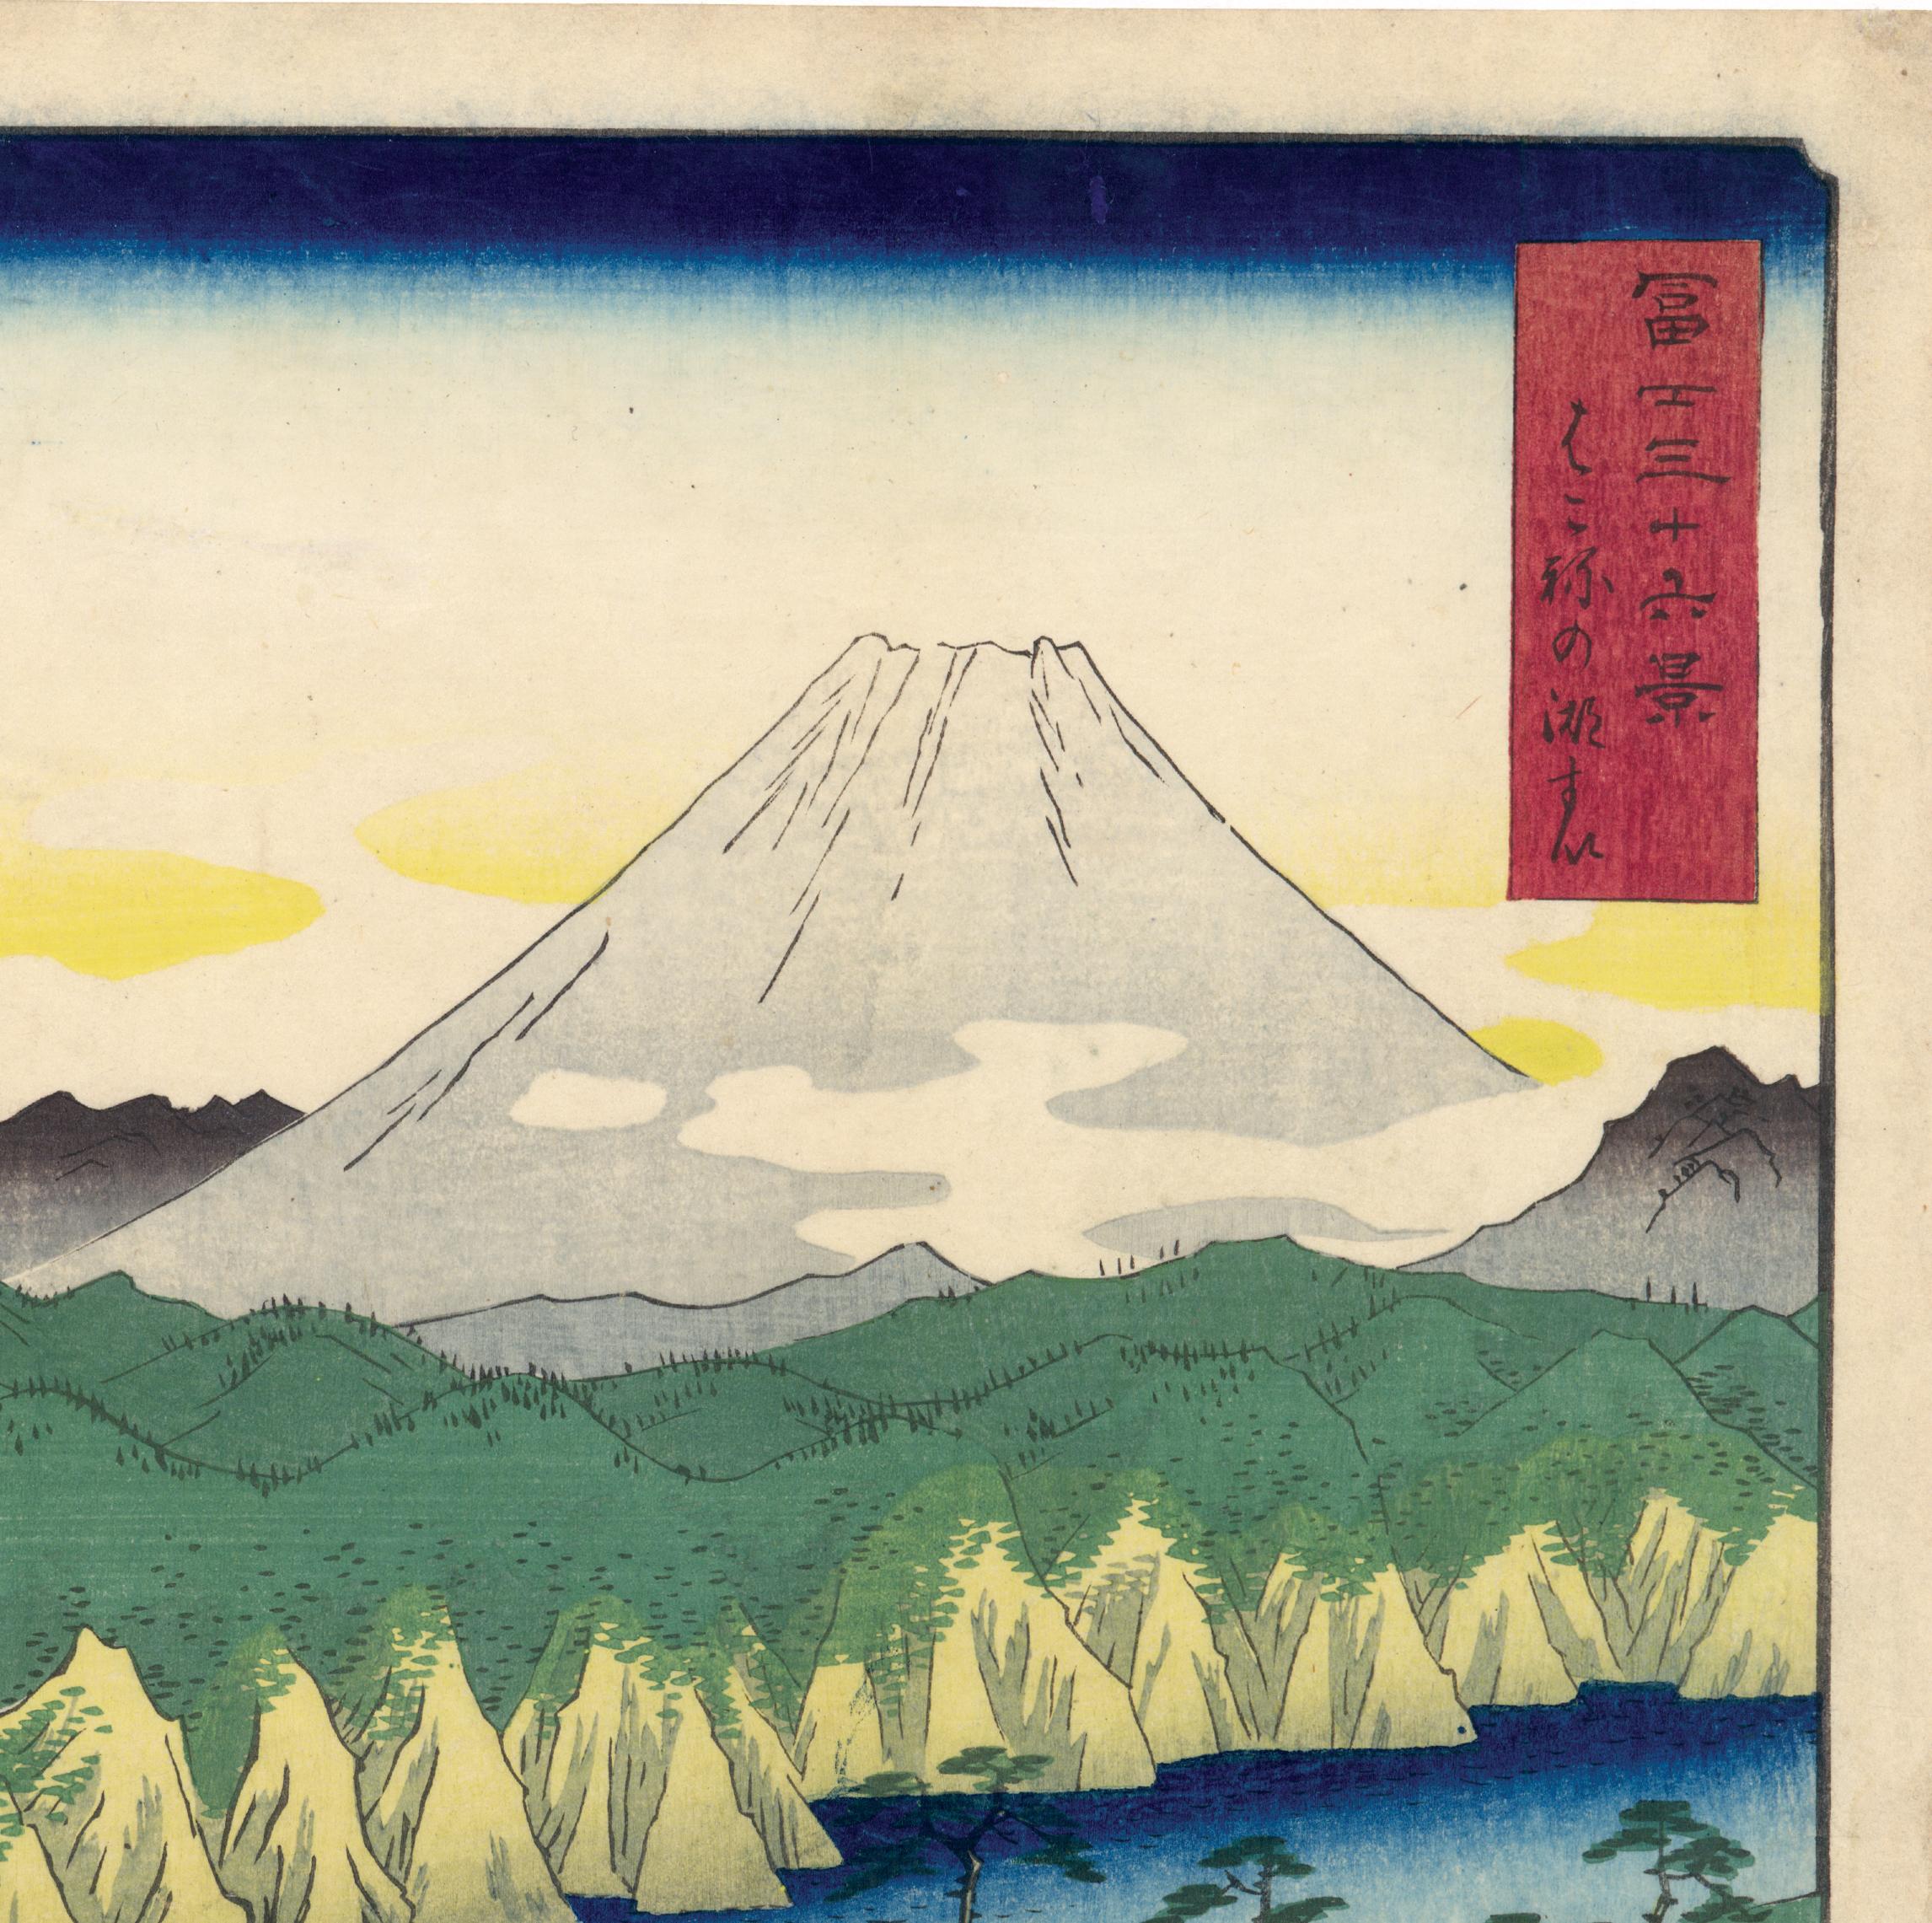 Lake at Hakone from 36 Views of Mt Fuji - Print by Utagawa Hiroshige (Ando Hiroshige)